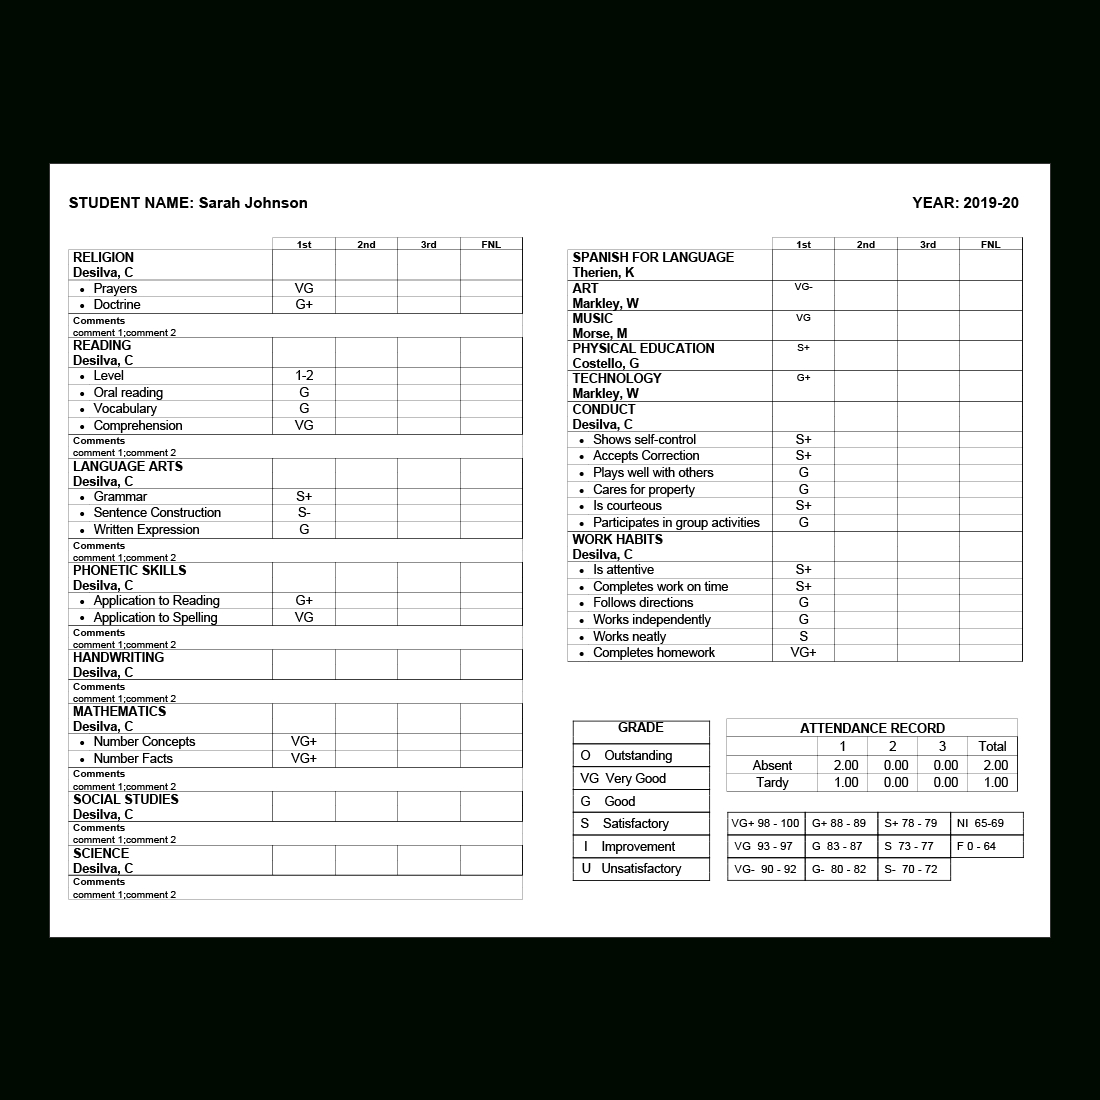 Report Card Software – Grade Management | Rediker Software With Summer School Progress Report Template